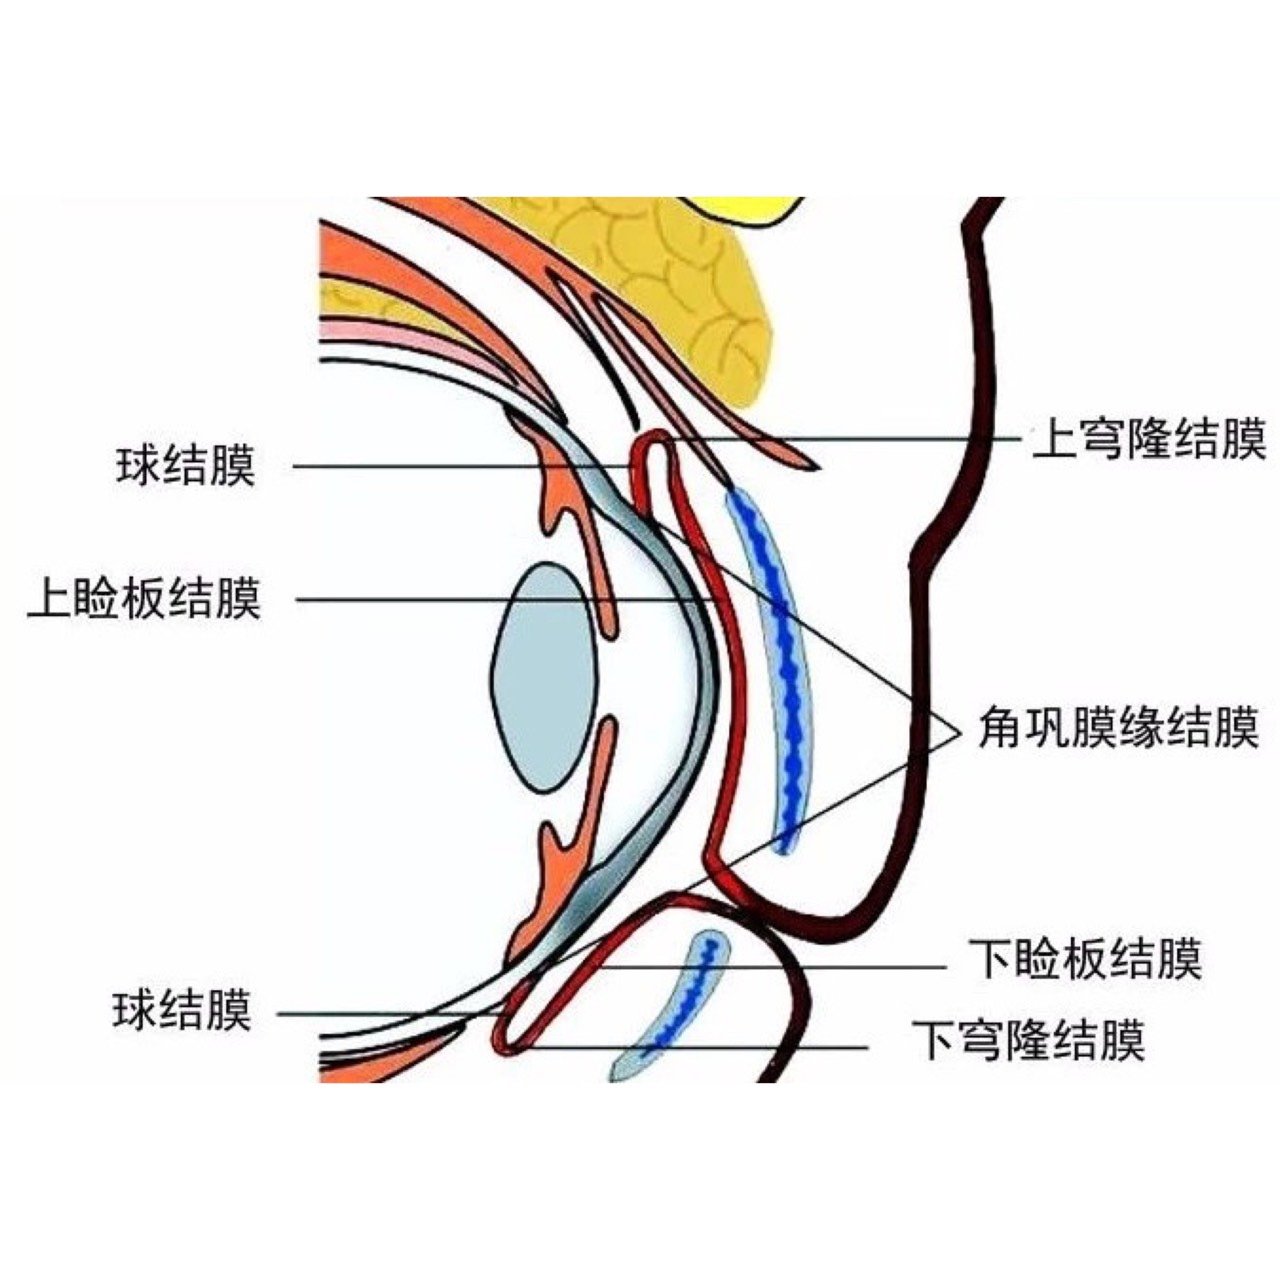 三、眼外肌鞘膜-眼科解剖学-医学